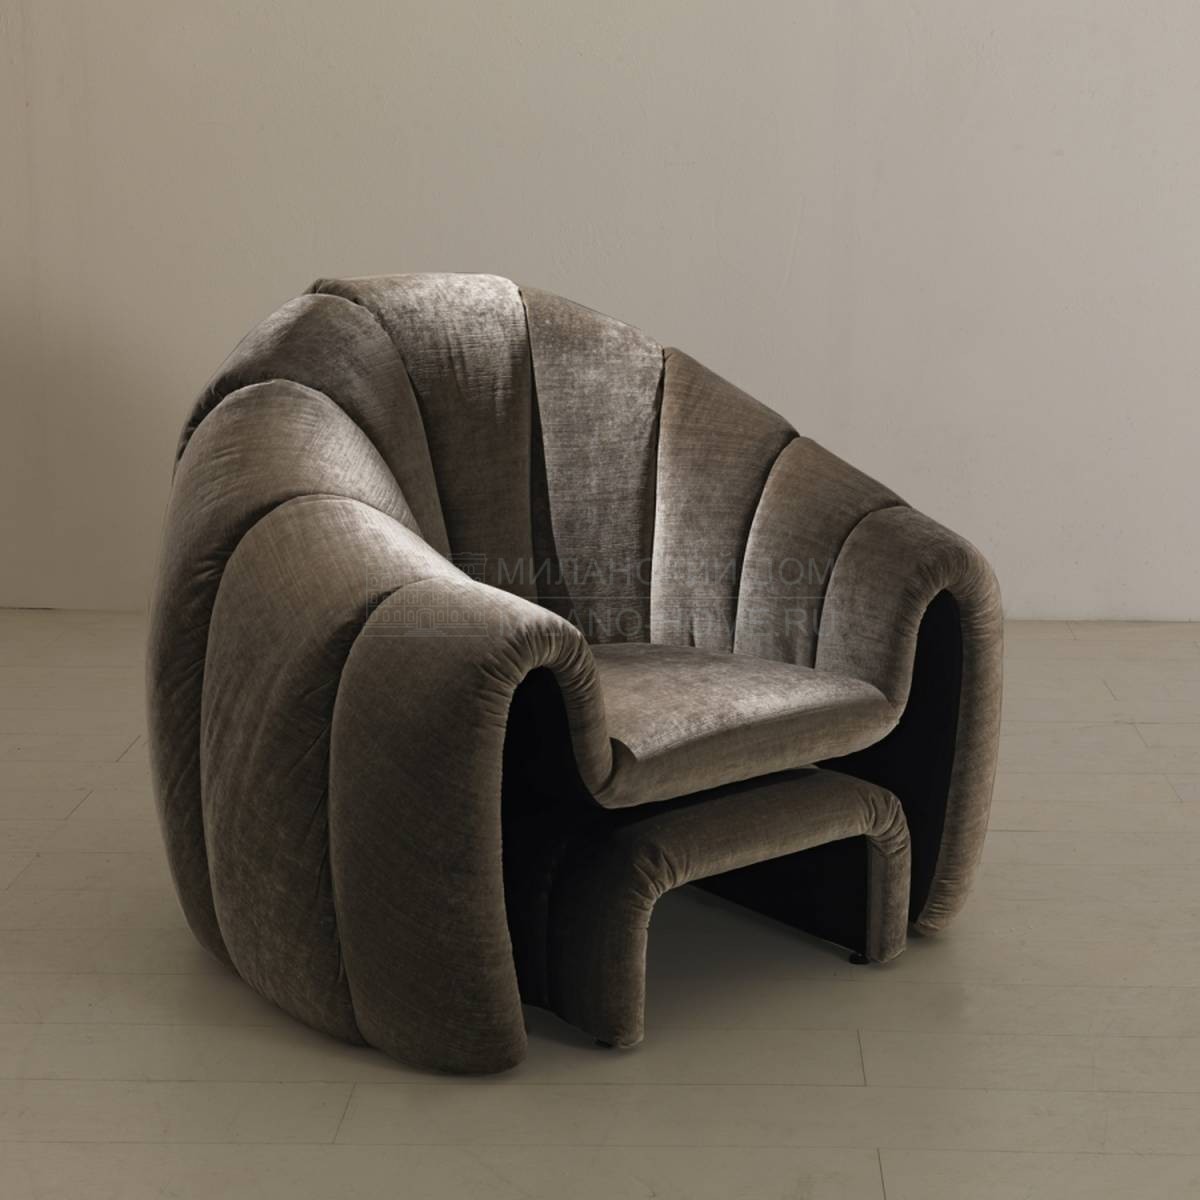 Круглое кресло Shell Asnaghi/armchair из Италии фабрики ASNAGHI / INEDITO